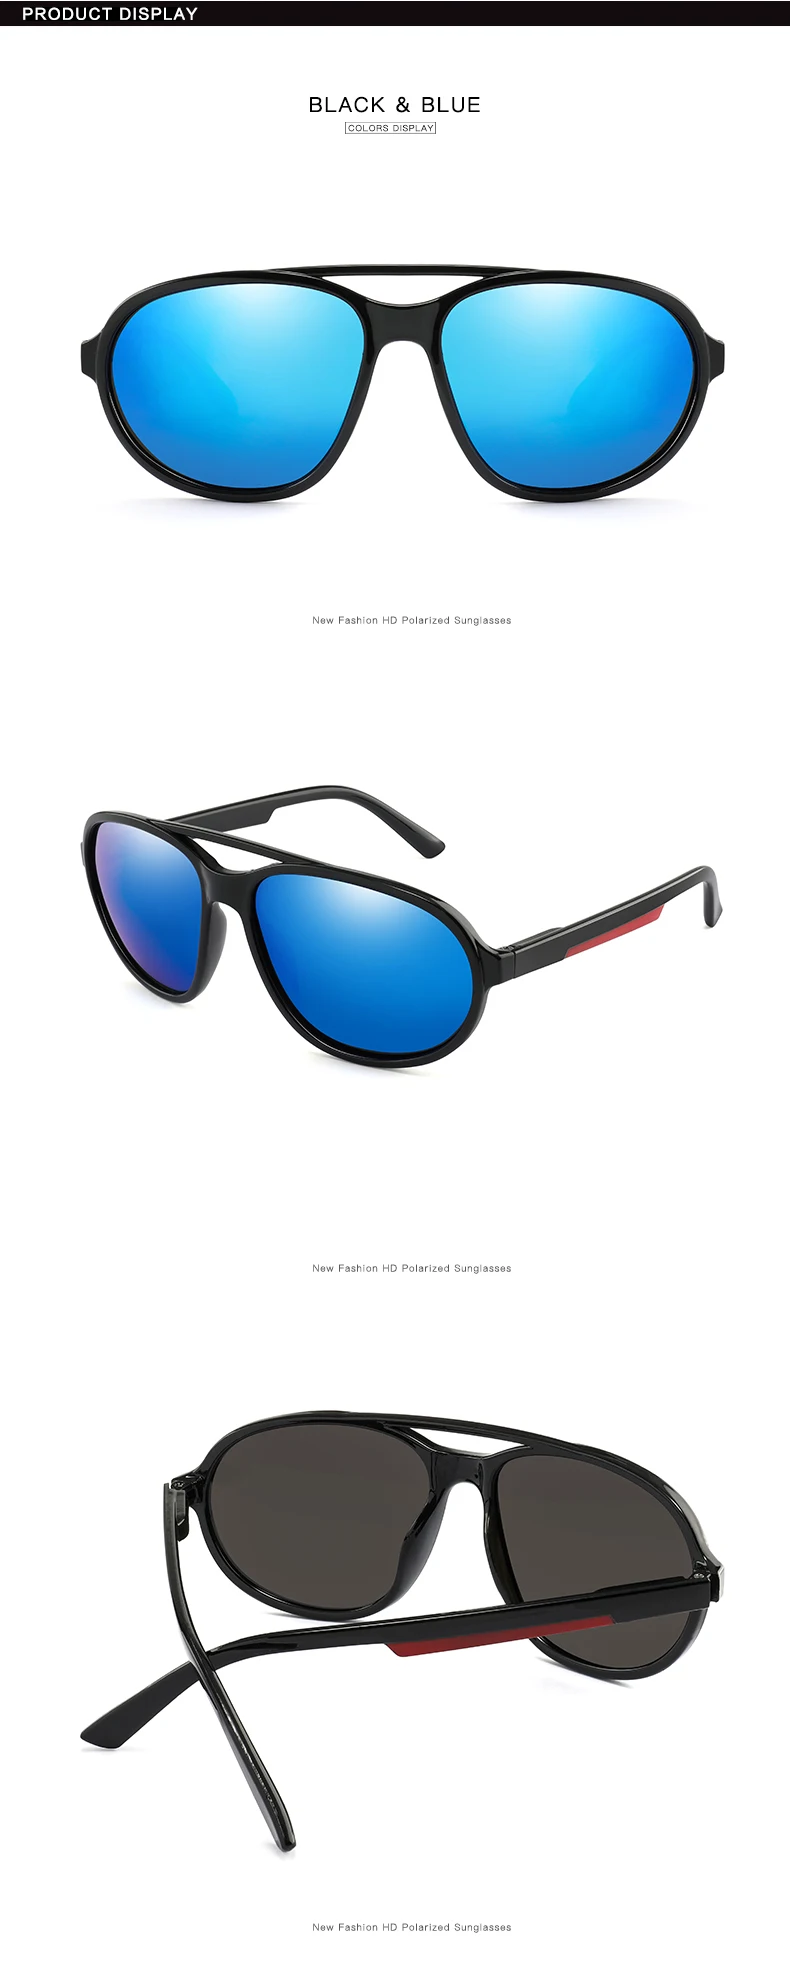 Классические мужские поляризованные солнцезащитные очки, фирменный дизайн, мужские солнцезащитные очки для вождения, UV400, очки для покрытия оттенков, Oculos de sol